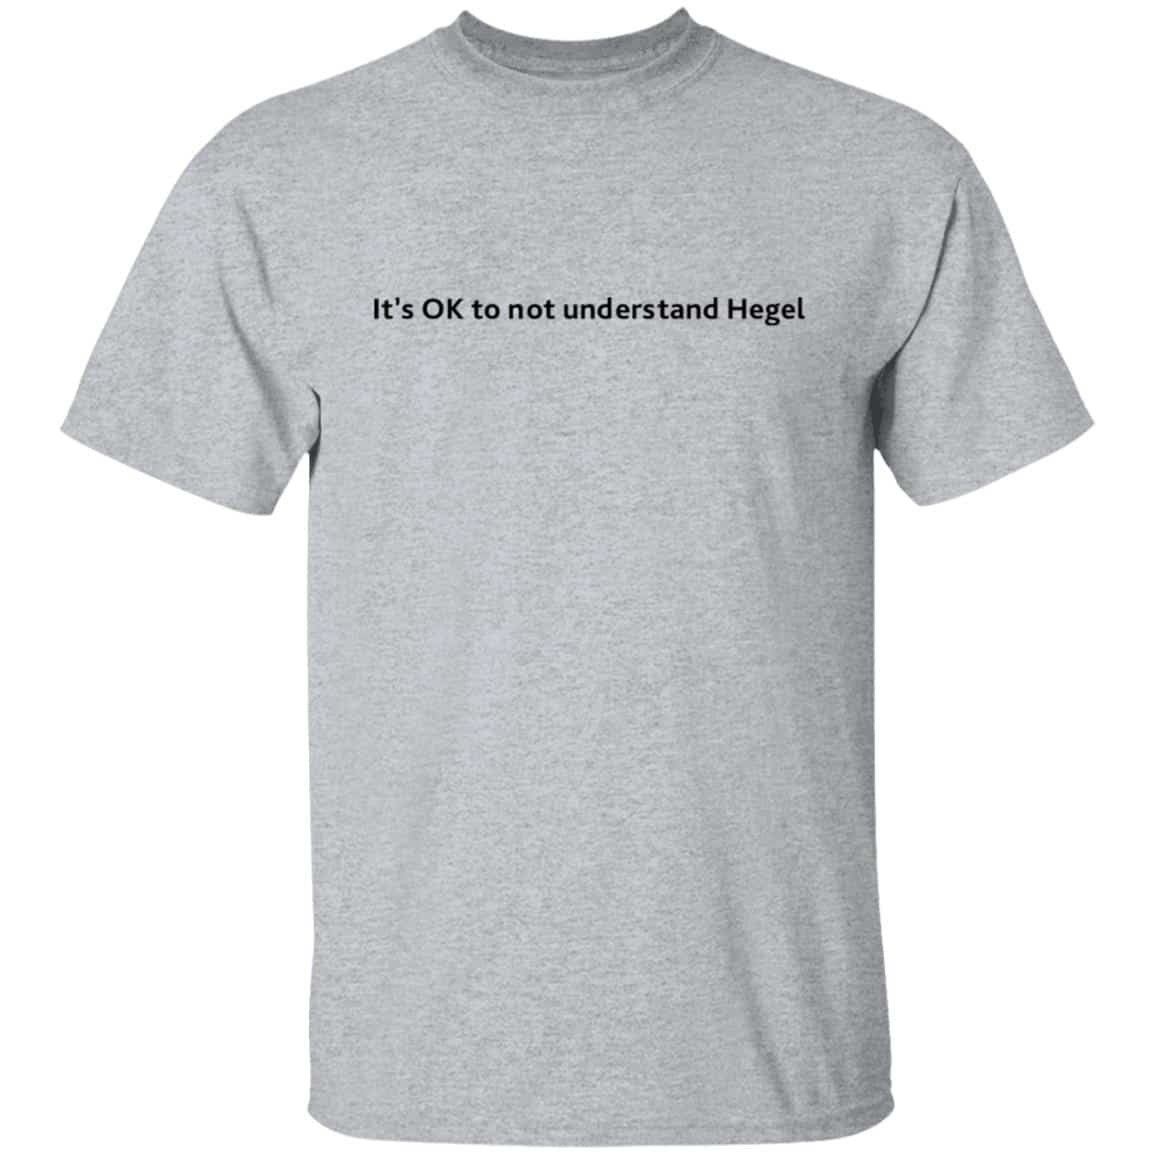 It’s ok to not understand Hegel shirt - Bucktee.com